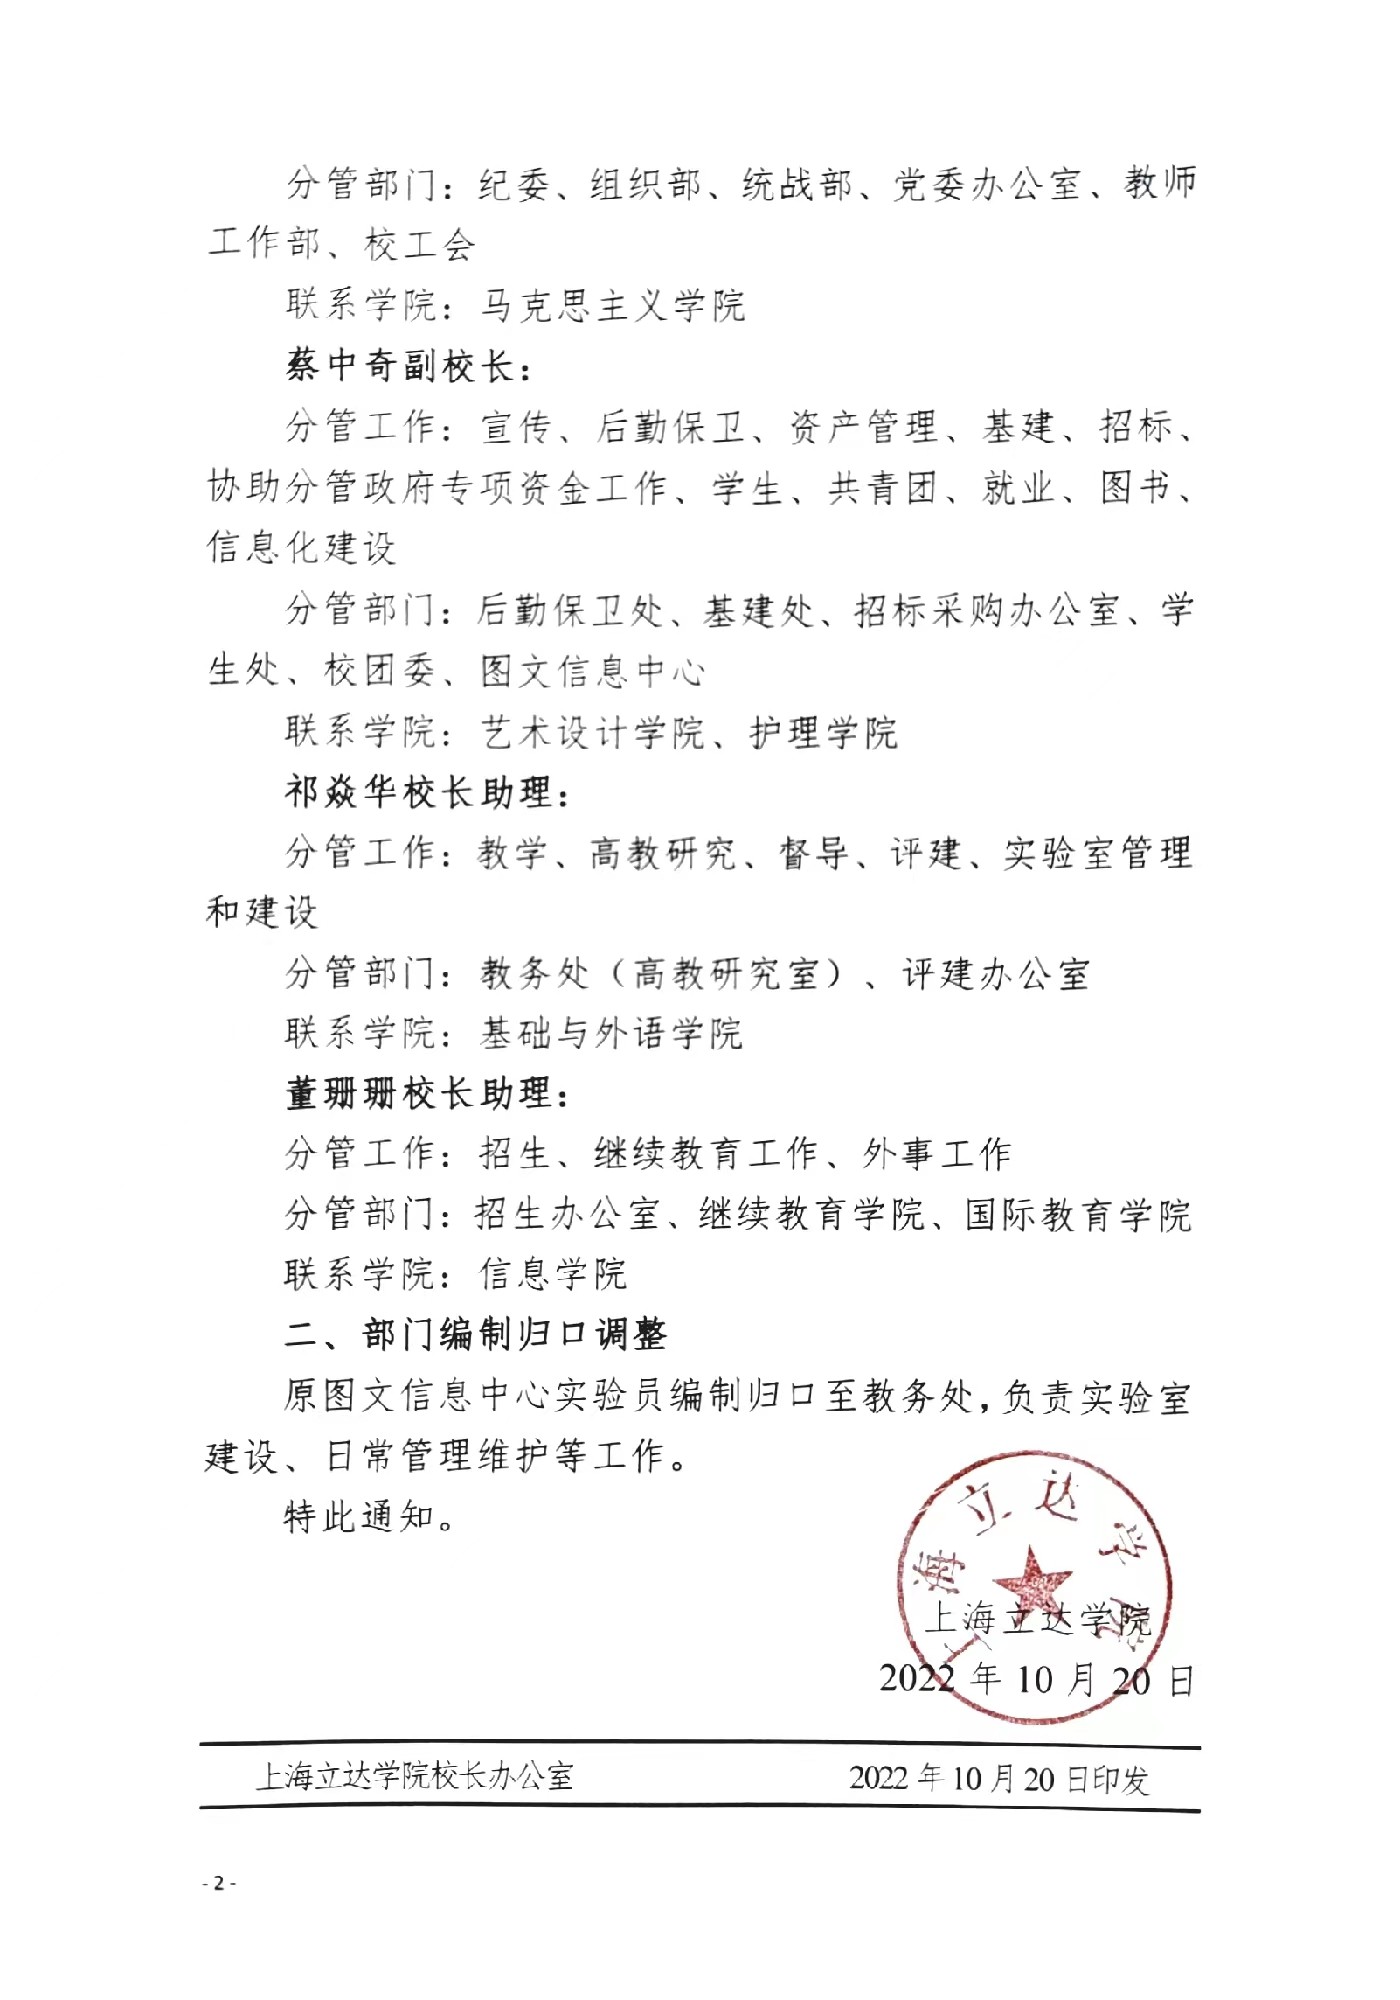 上海立达学院关于校领导分工的通知